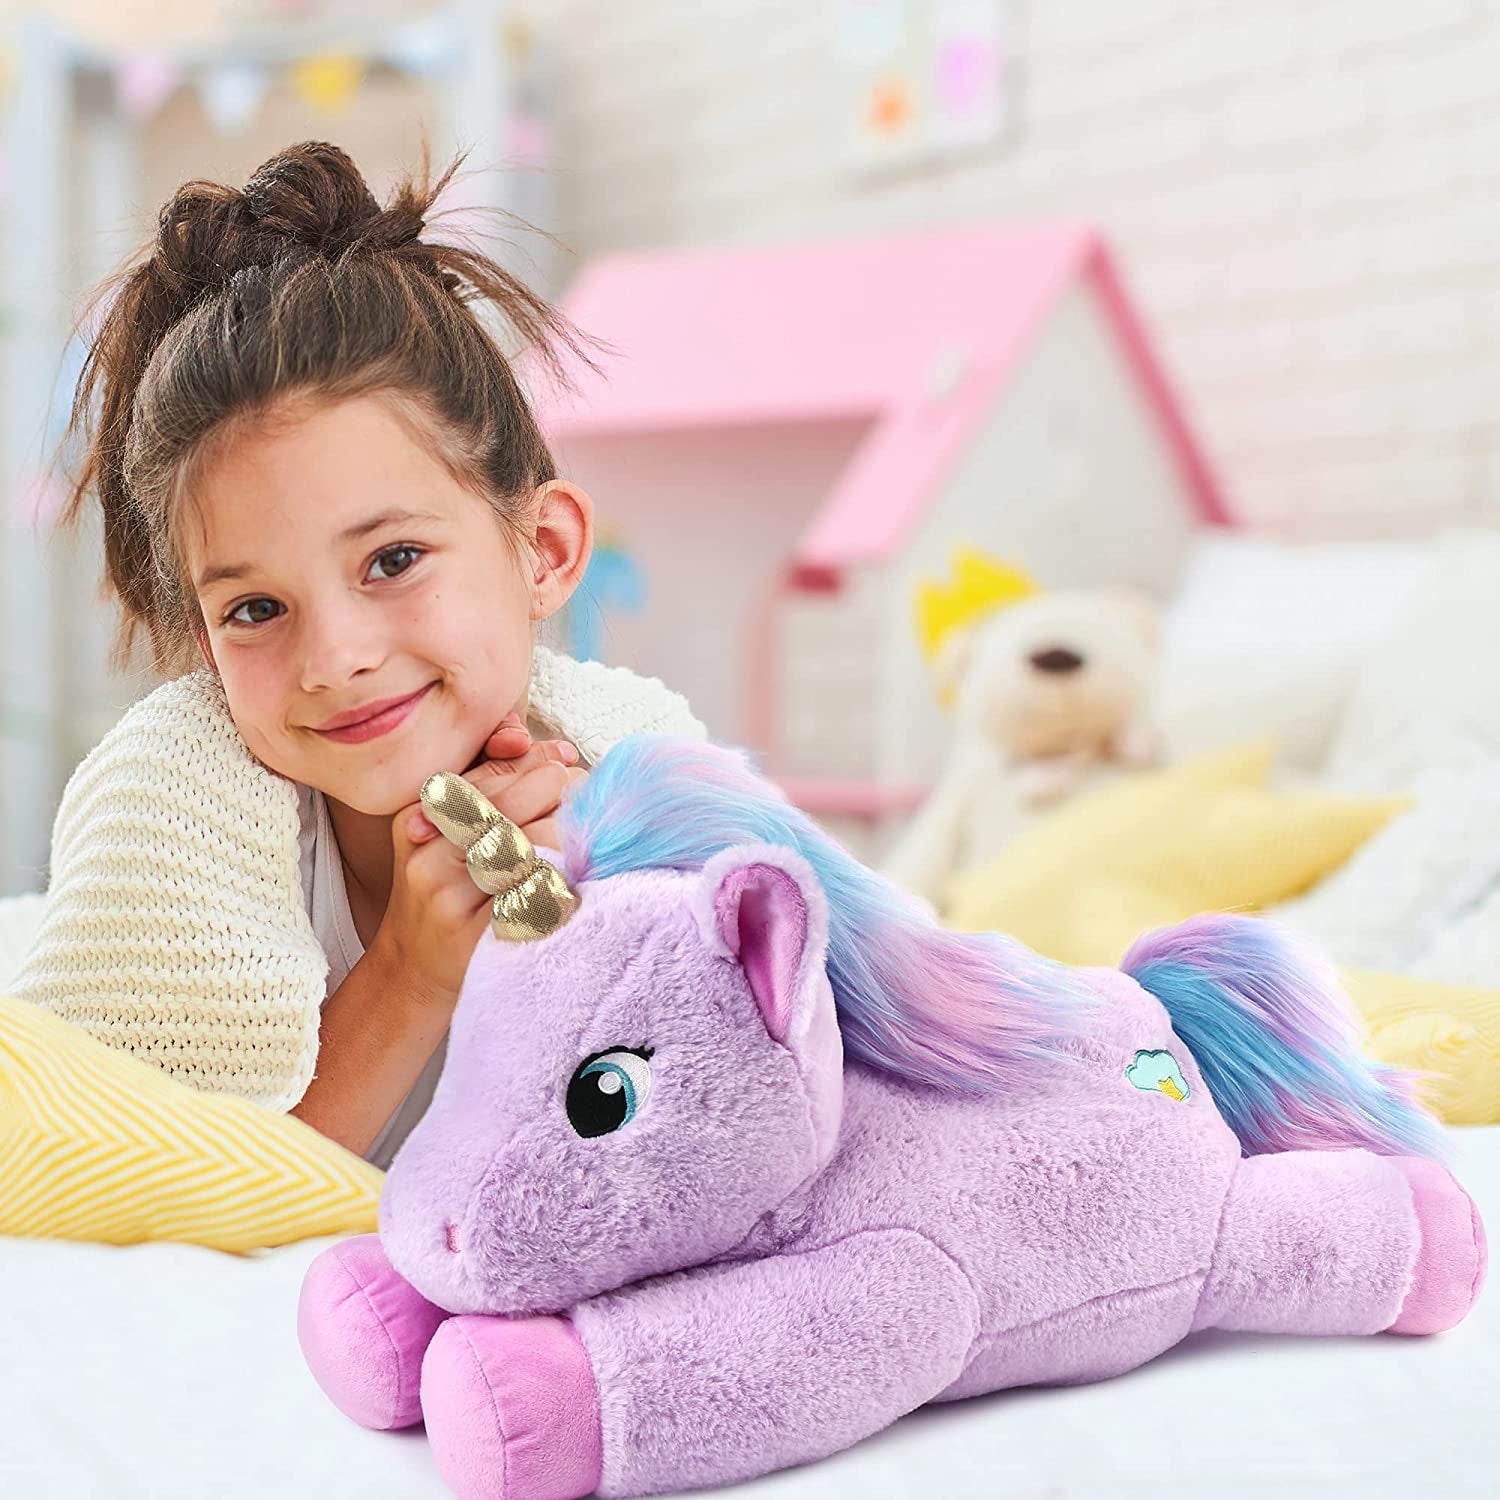 Unicorn Stuffed Animal, Large 18" Purple Unicorn Plush, Soft Unicorn Toy Gifts for Girls, Kids